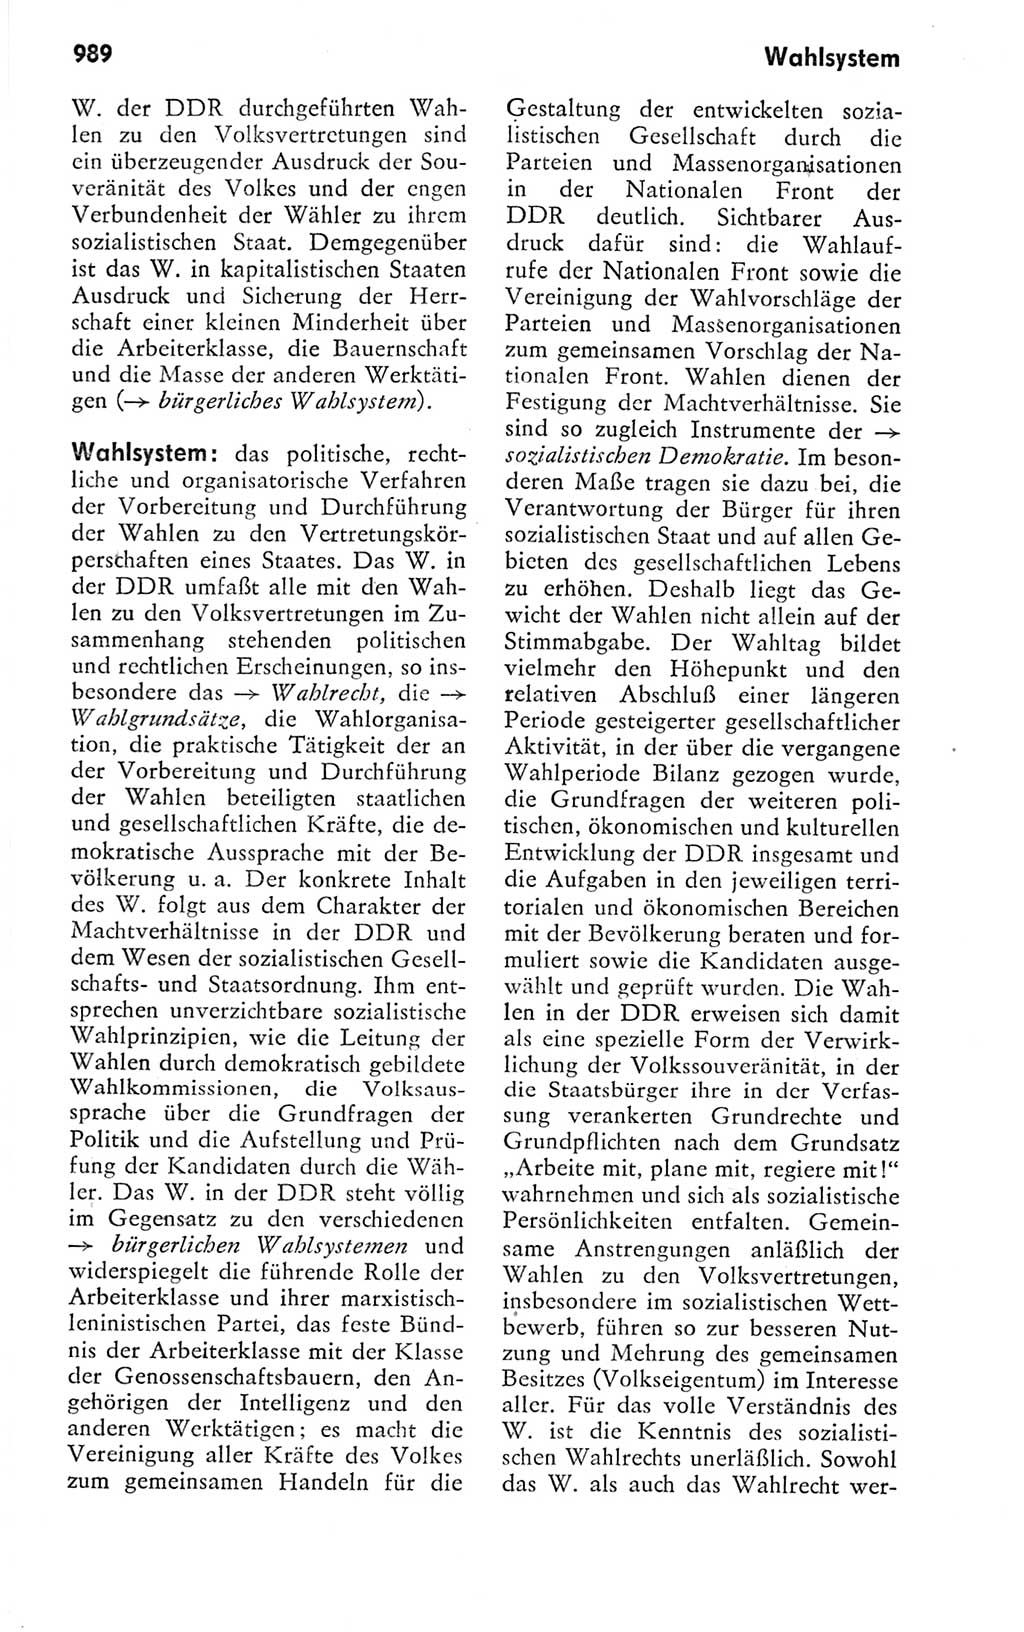 Kleines politisches Wörterbuch [Deutsche Demokratische Republik (DDR)] 1978, Seite 989 (Kl. pol. Wb. DDR 1978, S. 989)